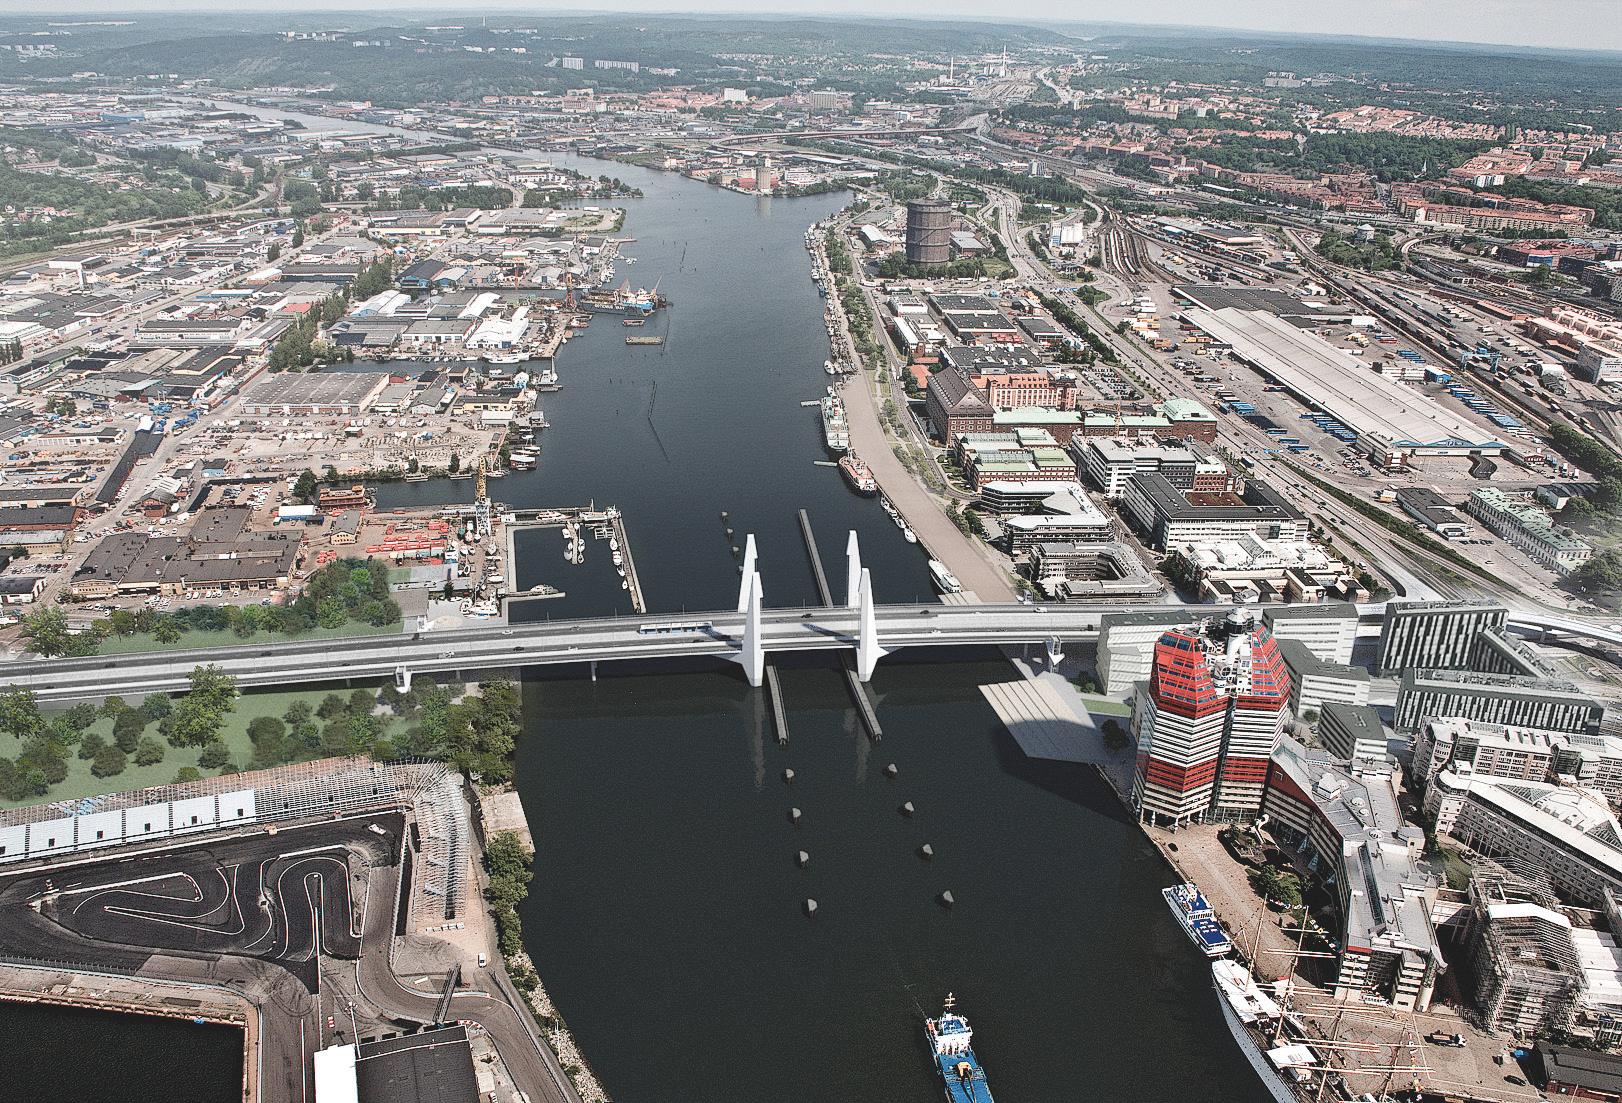 Bron med de fyra stålpylonerna kommer att bli ett nytt landmärke i Göteborg, vid sidan av kända profiler som Poseidon, Ullevi och Feskekörka. Visualisering som visar hur Hisingsbron i Göteborg är tänkt att se ut när den är klar 2021.